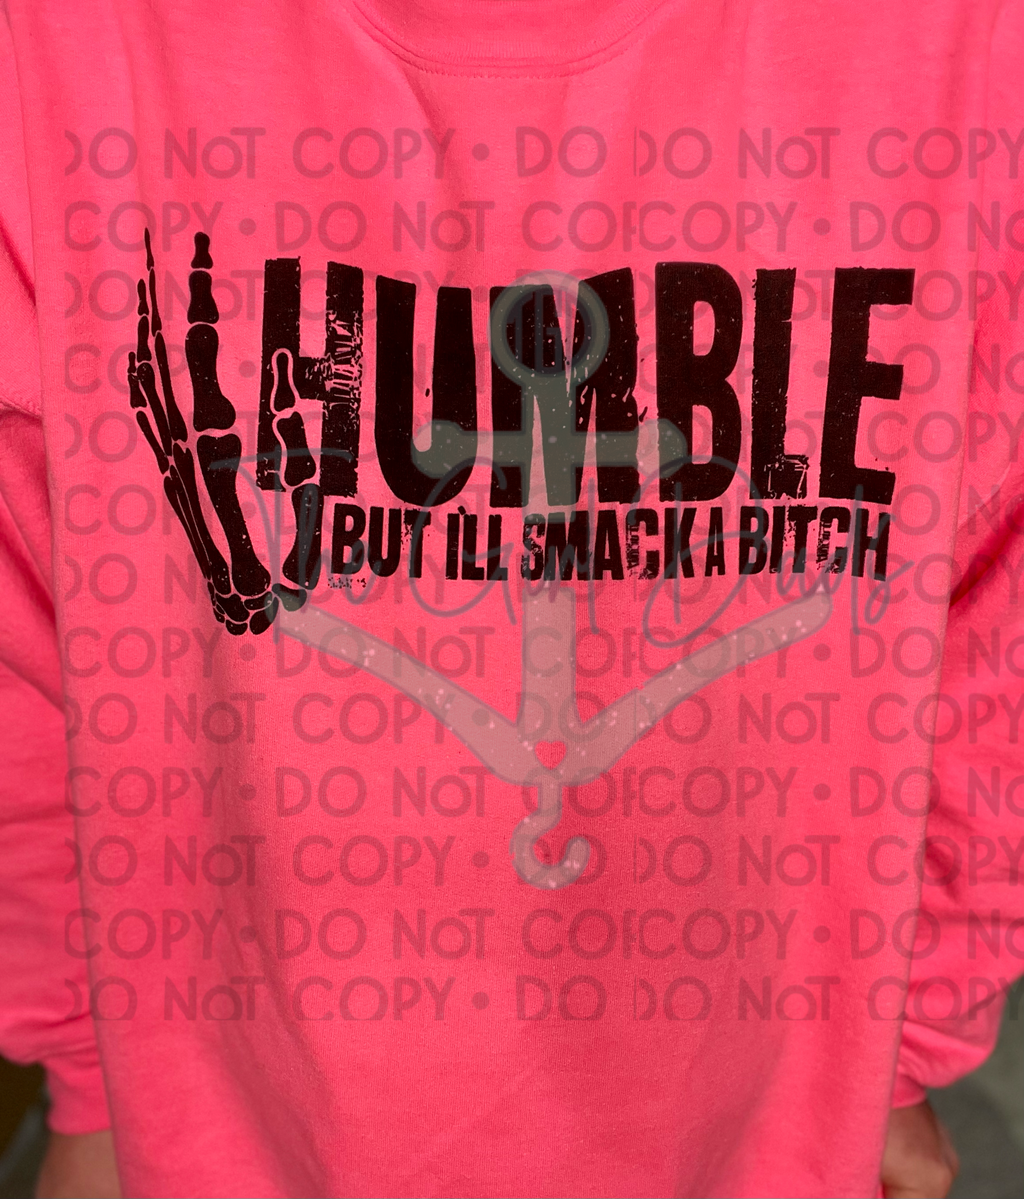 Humble But I'll Smack Bitch Top Design